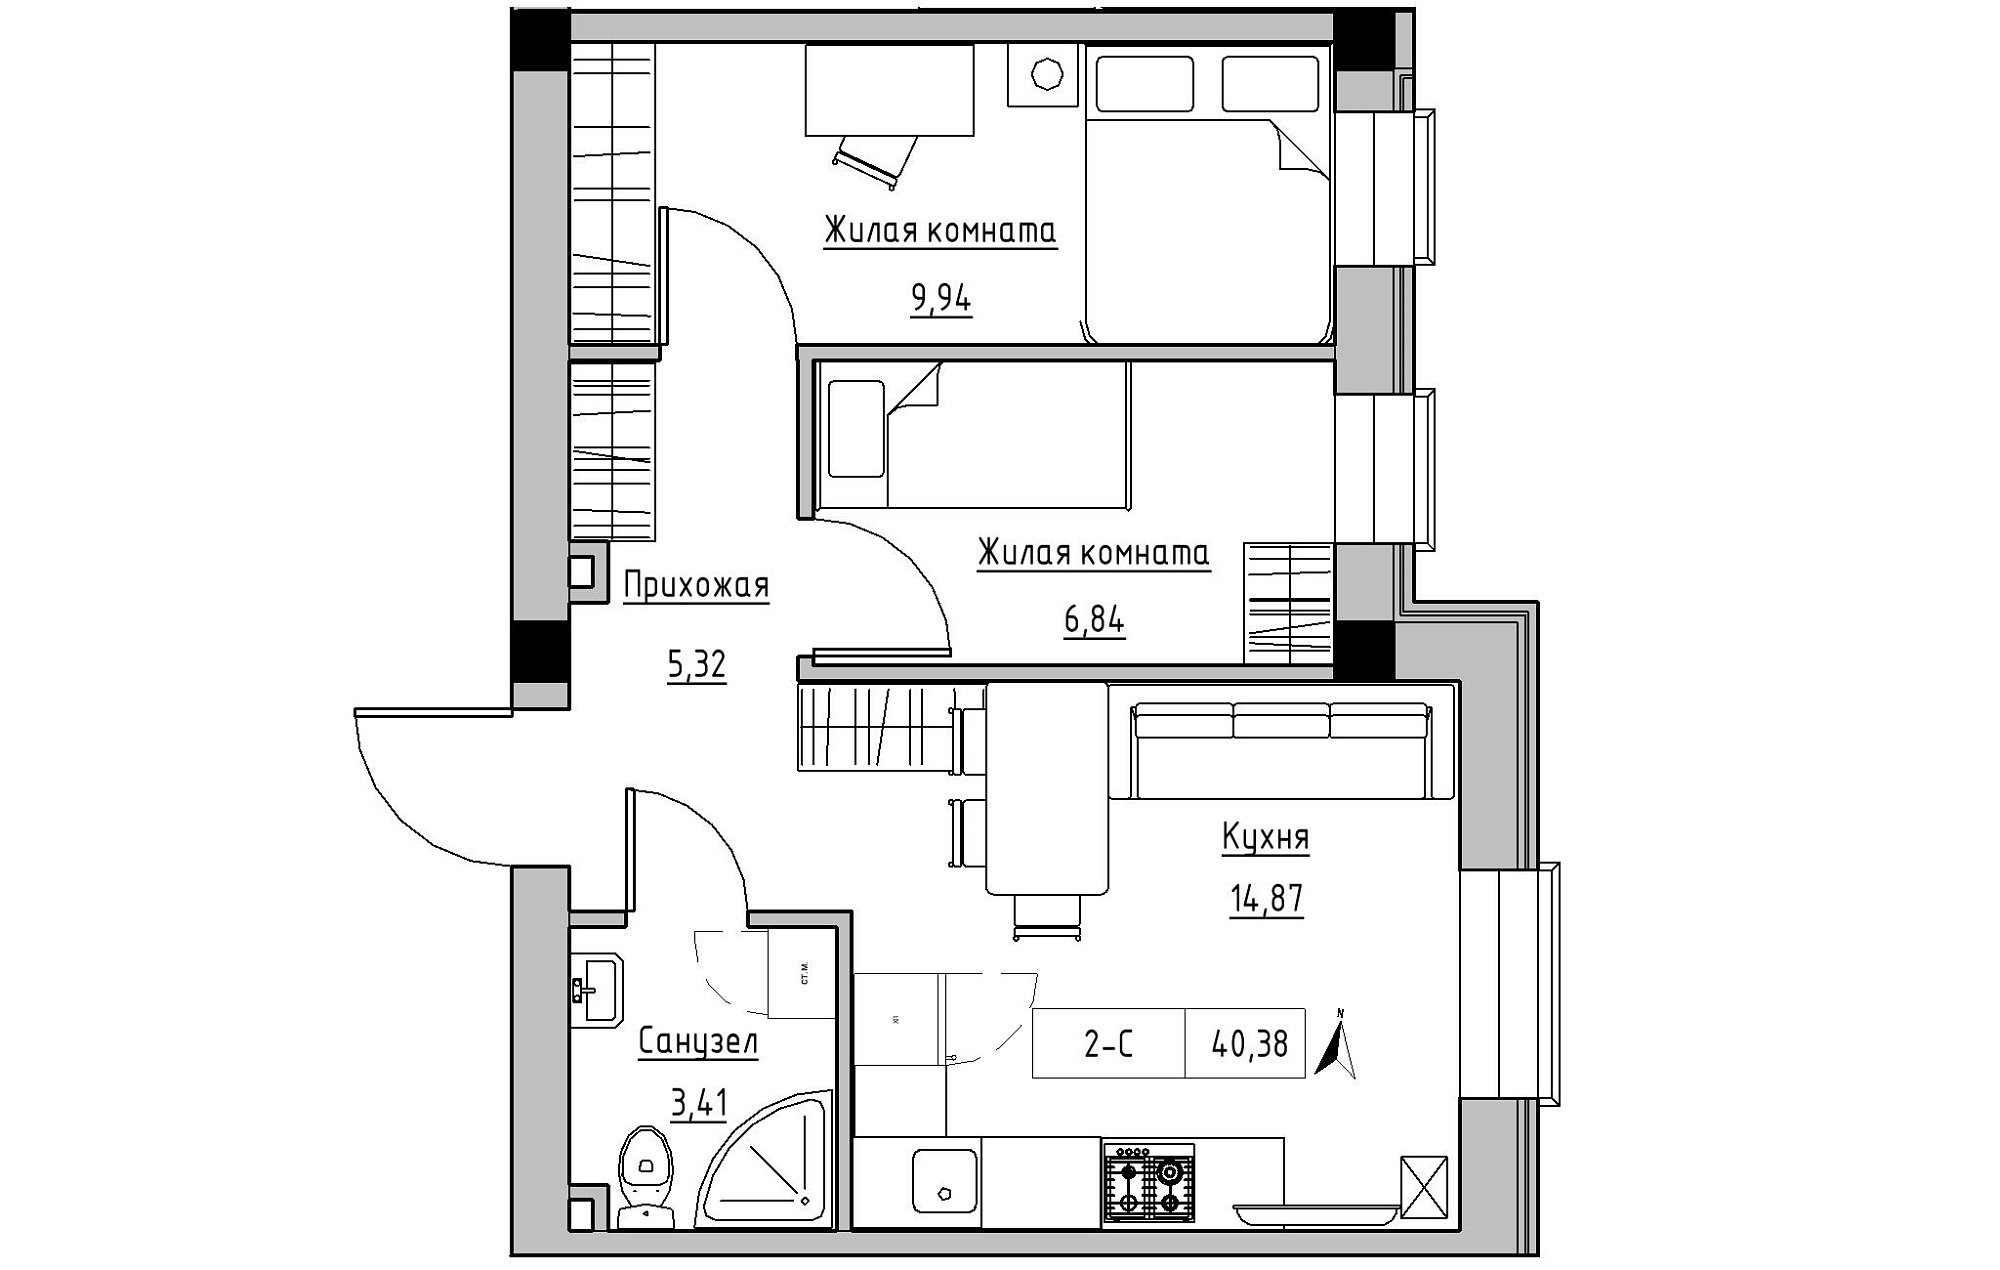 Планування 2-к квартира площею 40.38м2, KS-019-01/0006.